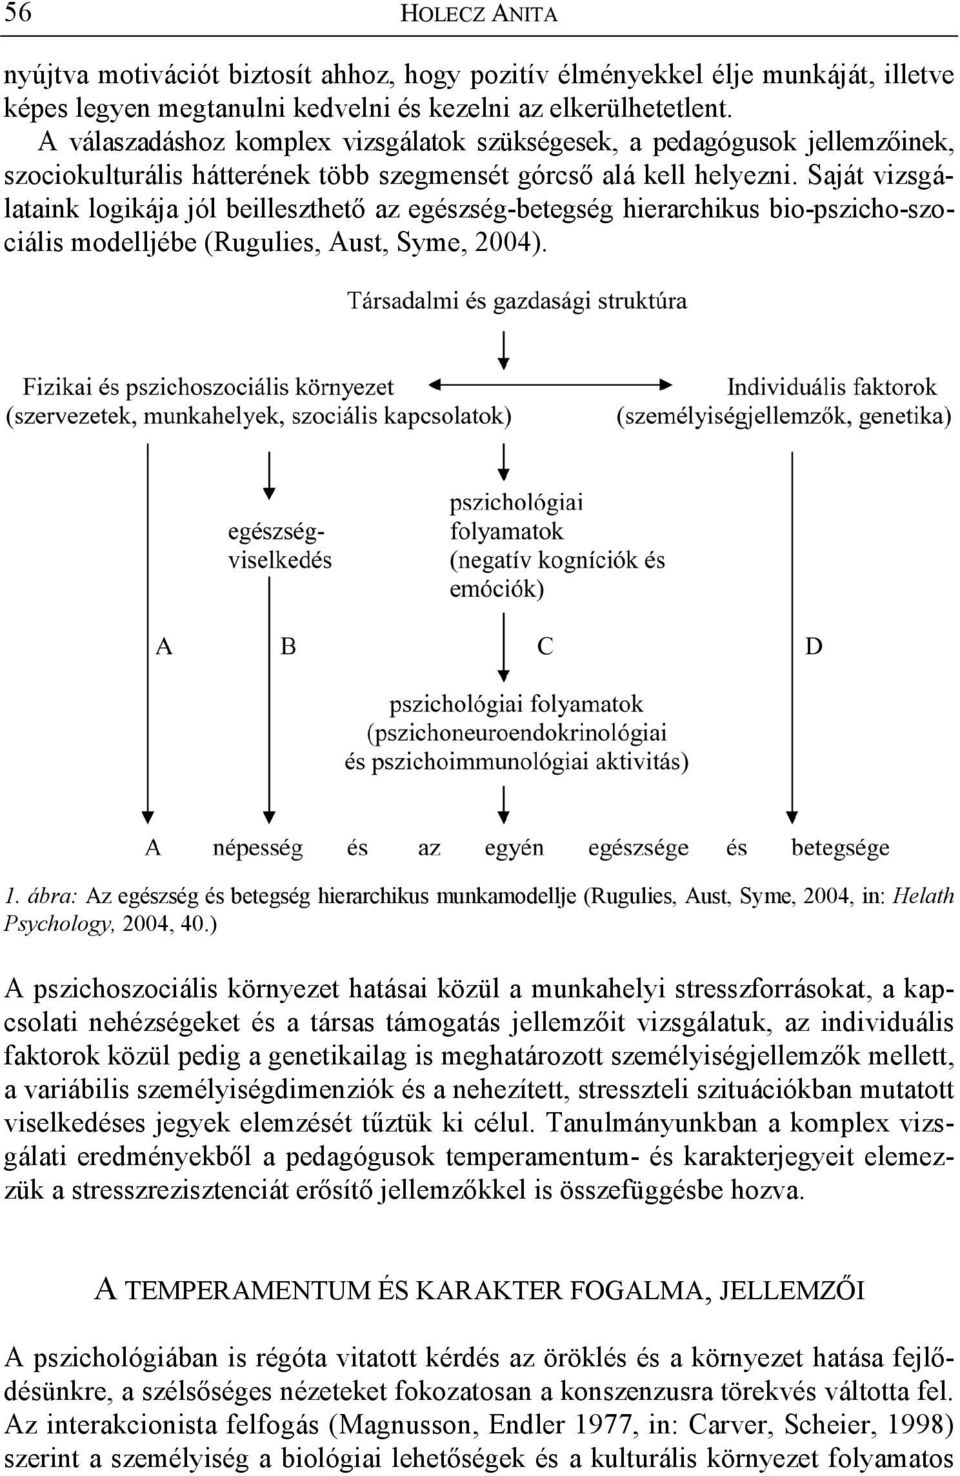 Saját vizsgálataink logikája jól beilleszthet az egészség-betegség hierarchikus bio-pszicho-szociális modelljébe (Rugulies, Aust, Syme, 2004). 1.